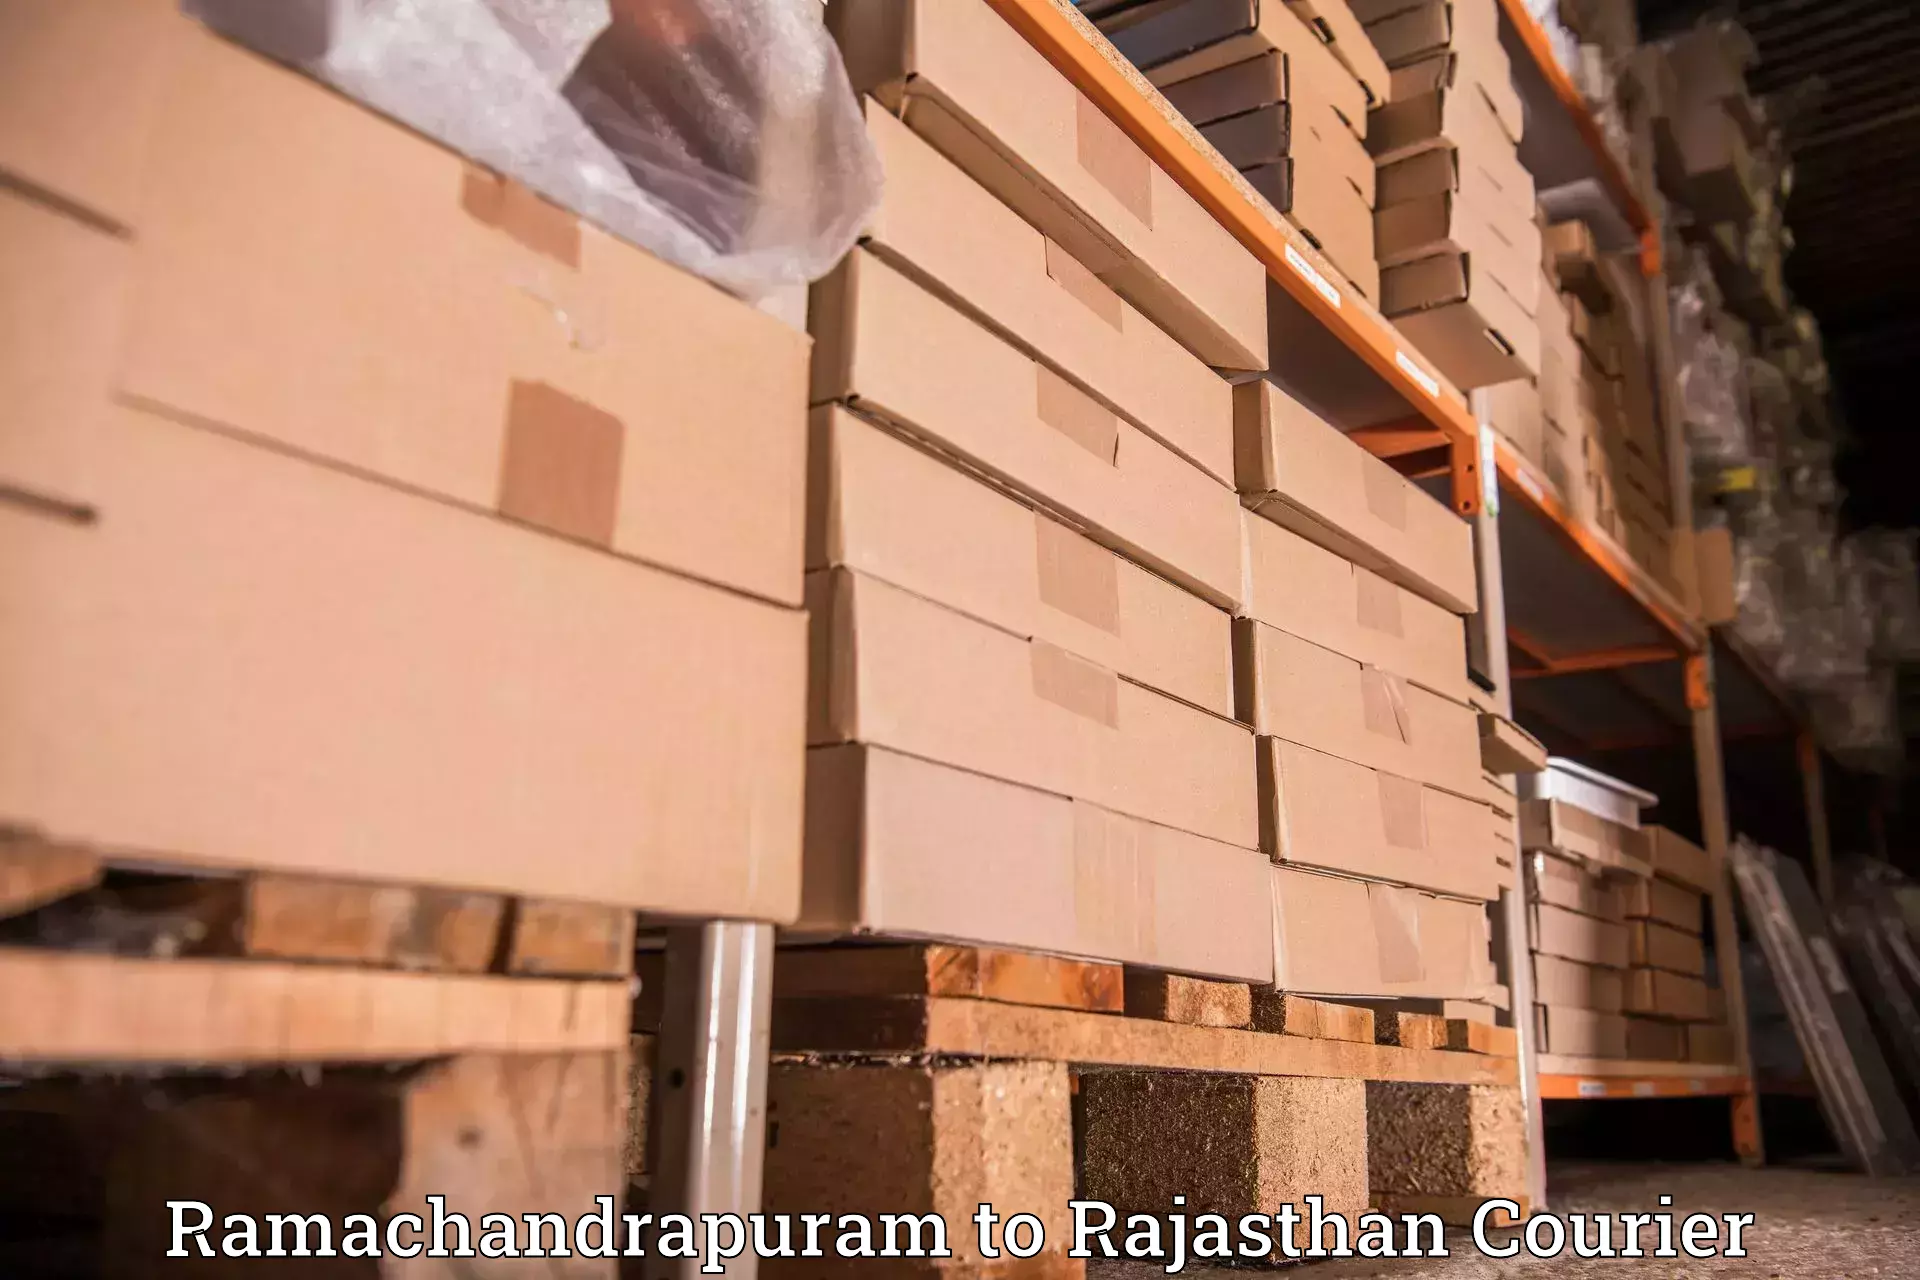 Express delivery capabilities Ramachandrapuram to Mathania